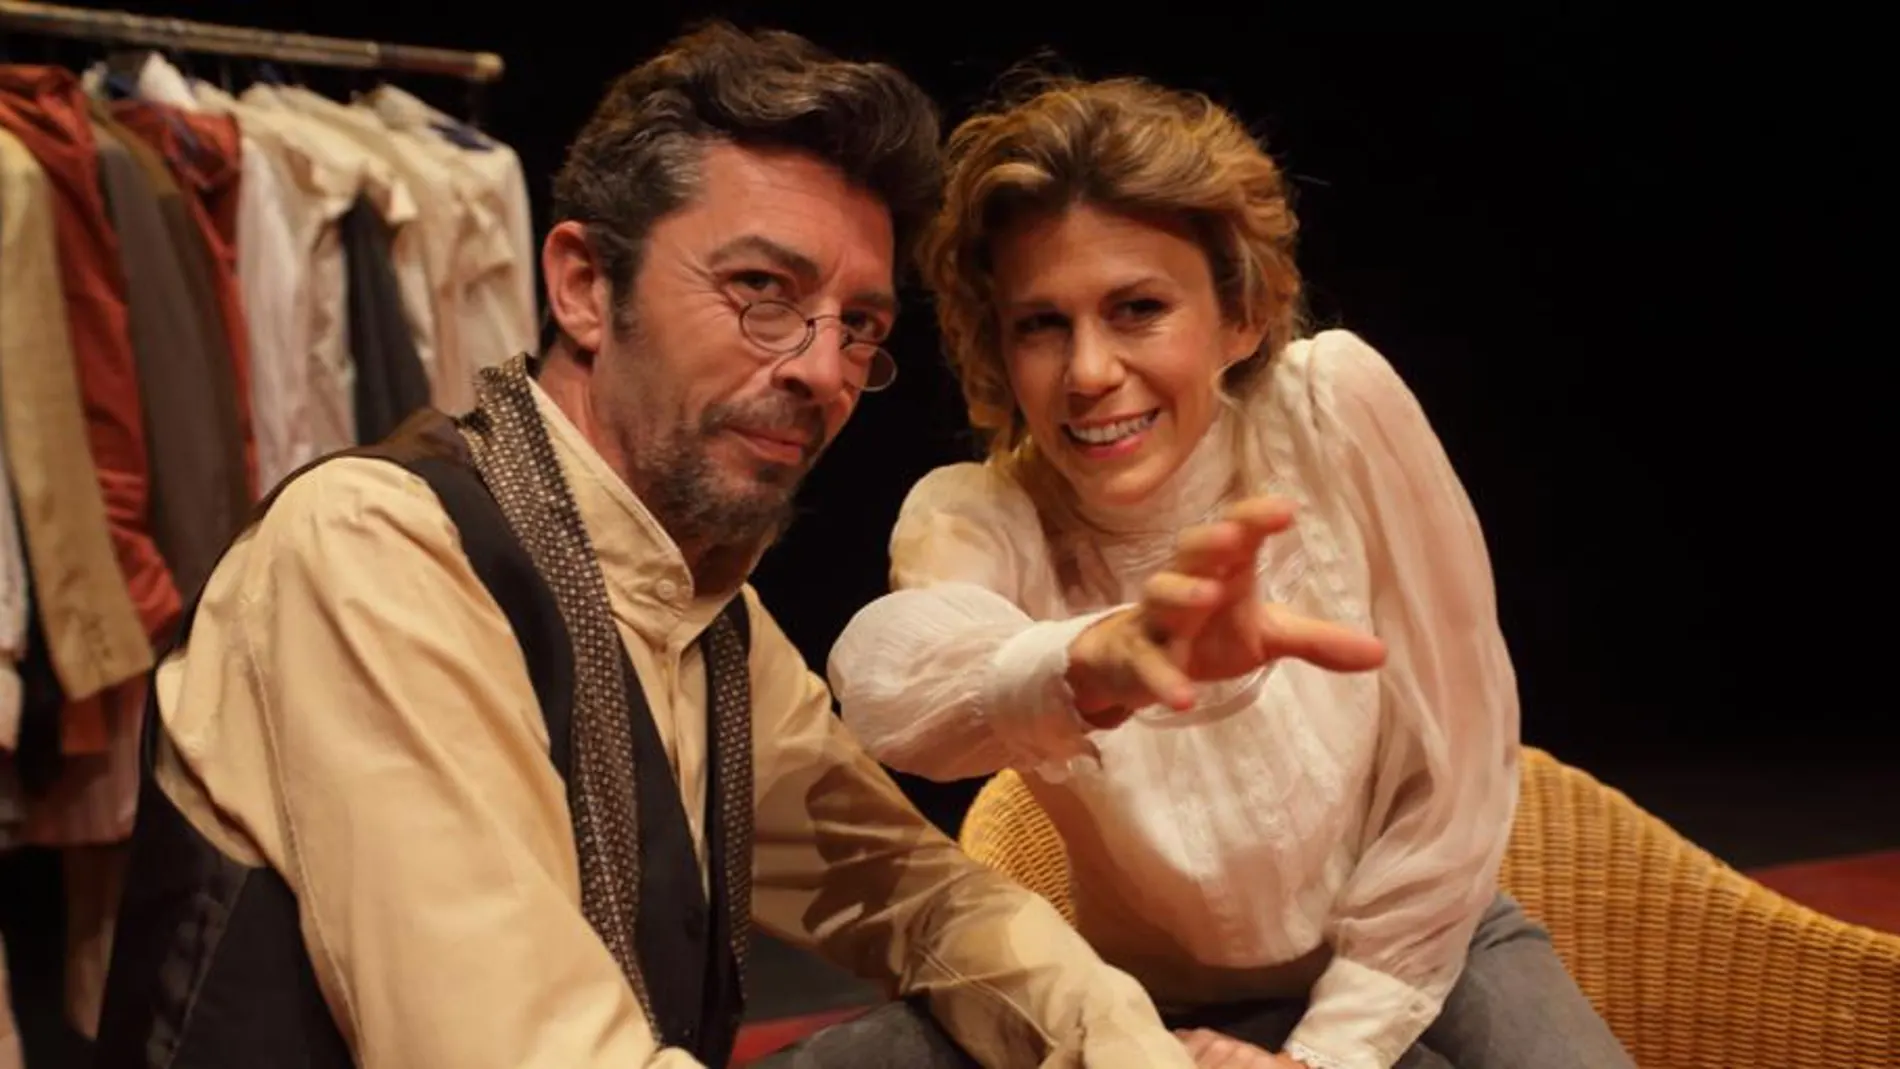 Rebeca Valls y José Manuel Casany protagonizan "Tu mano en la mía"